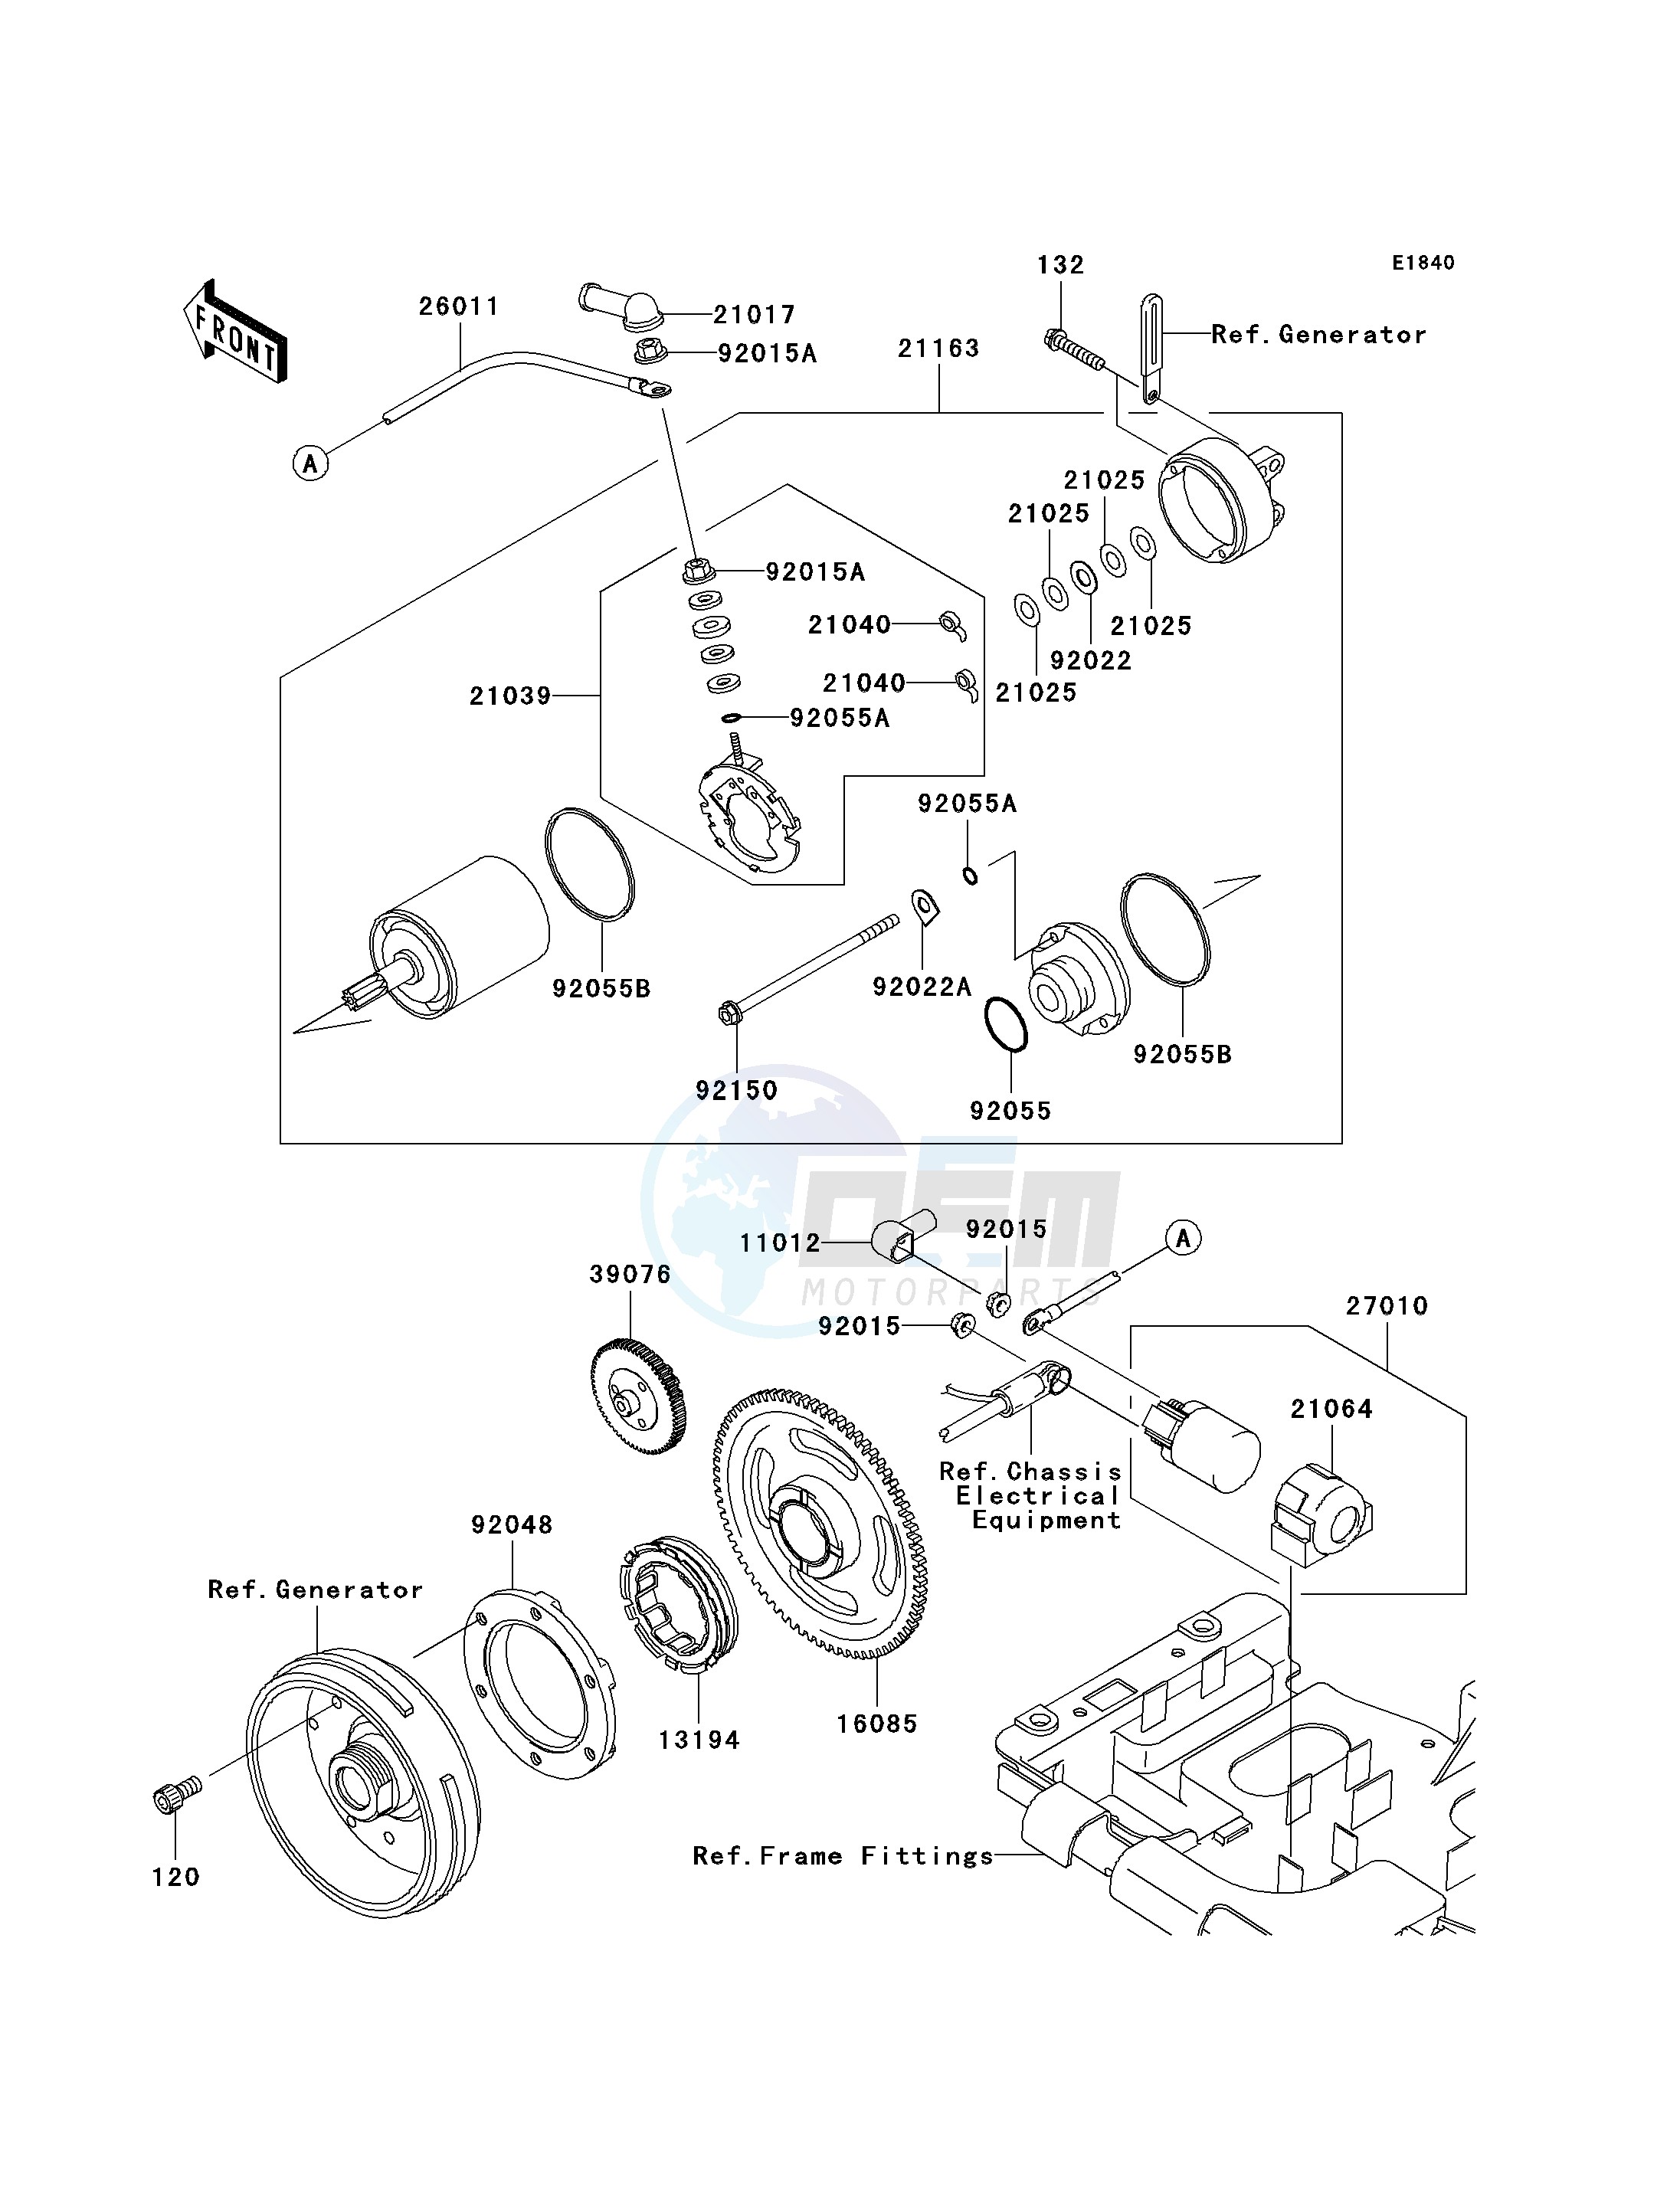 STARTER MOTOR-- C6F- - blueprint